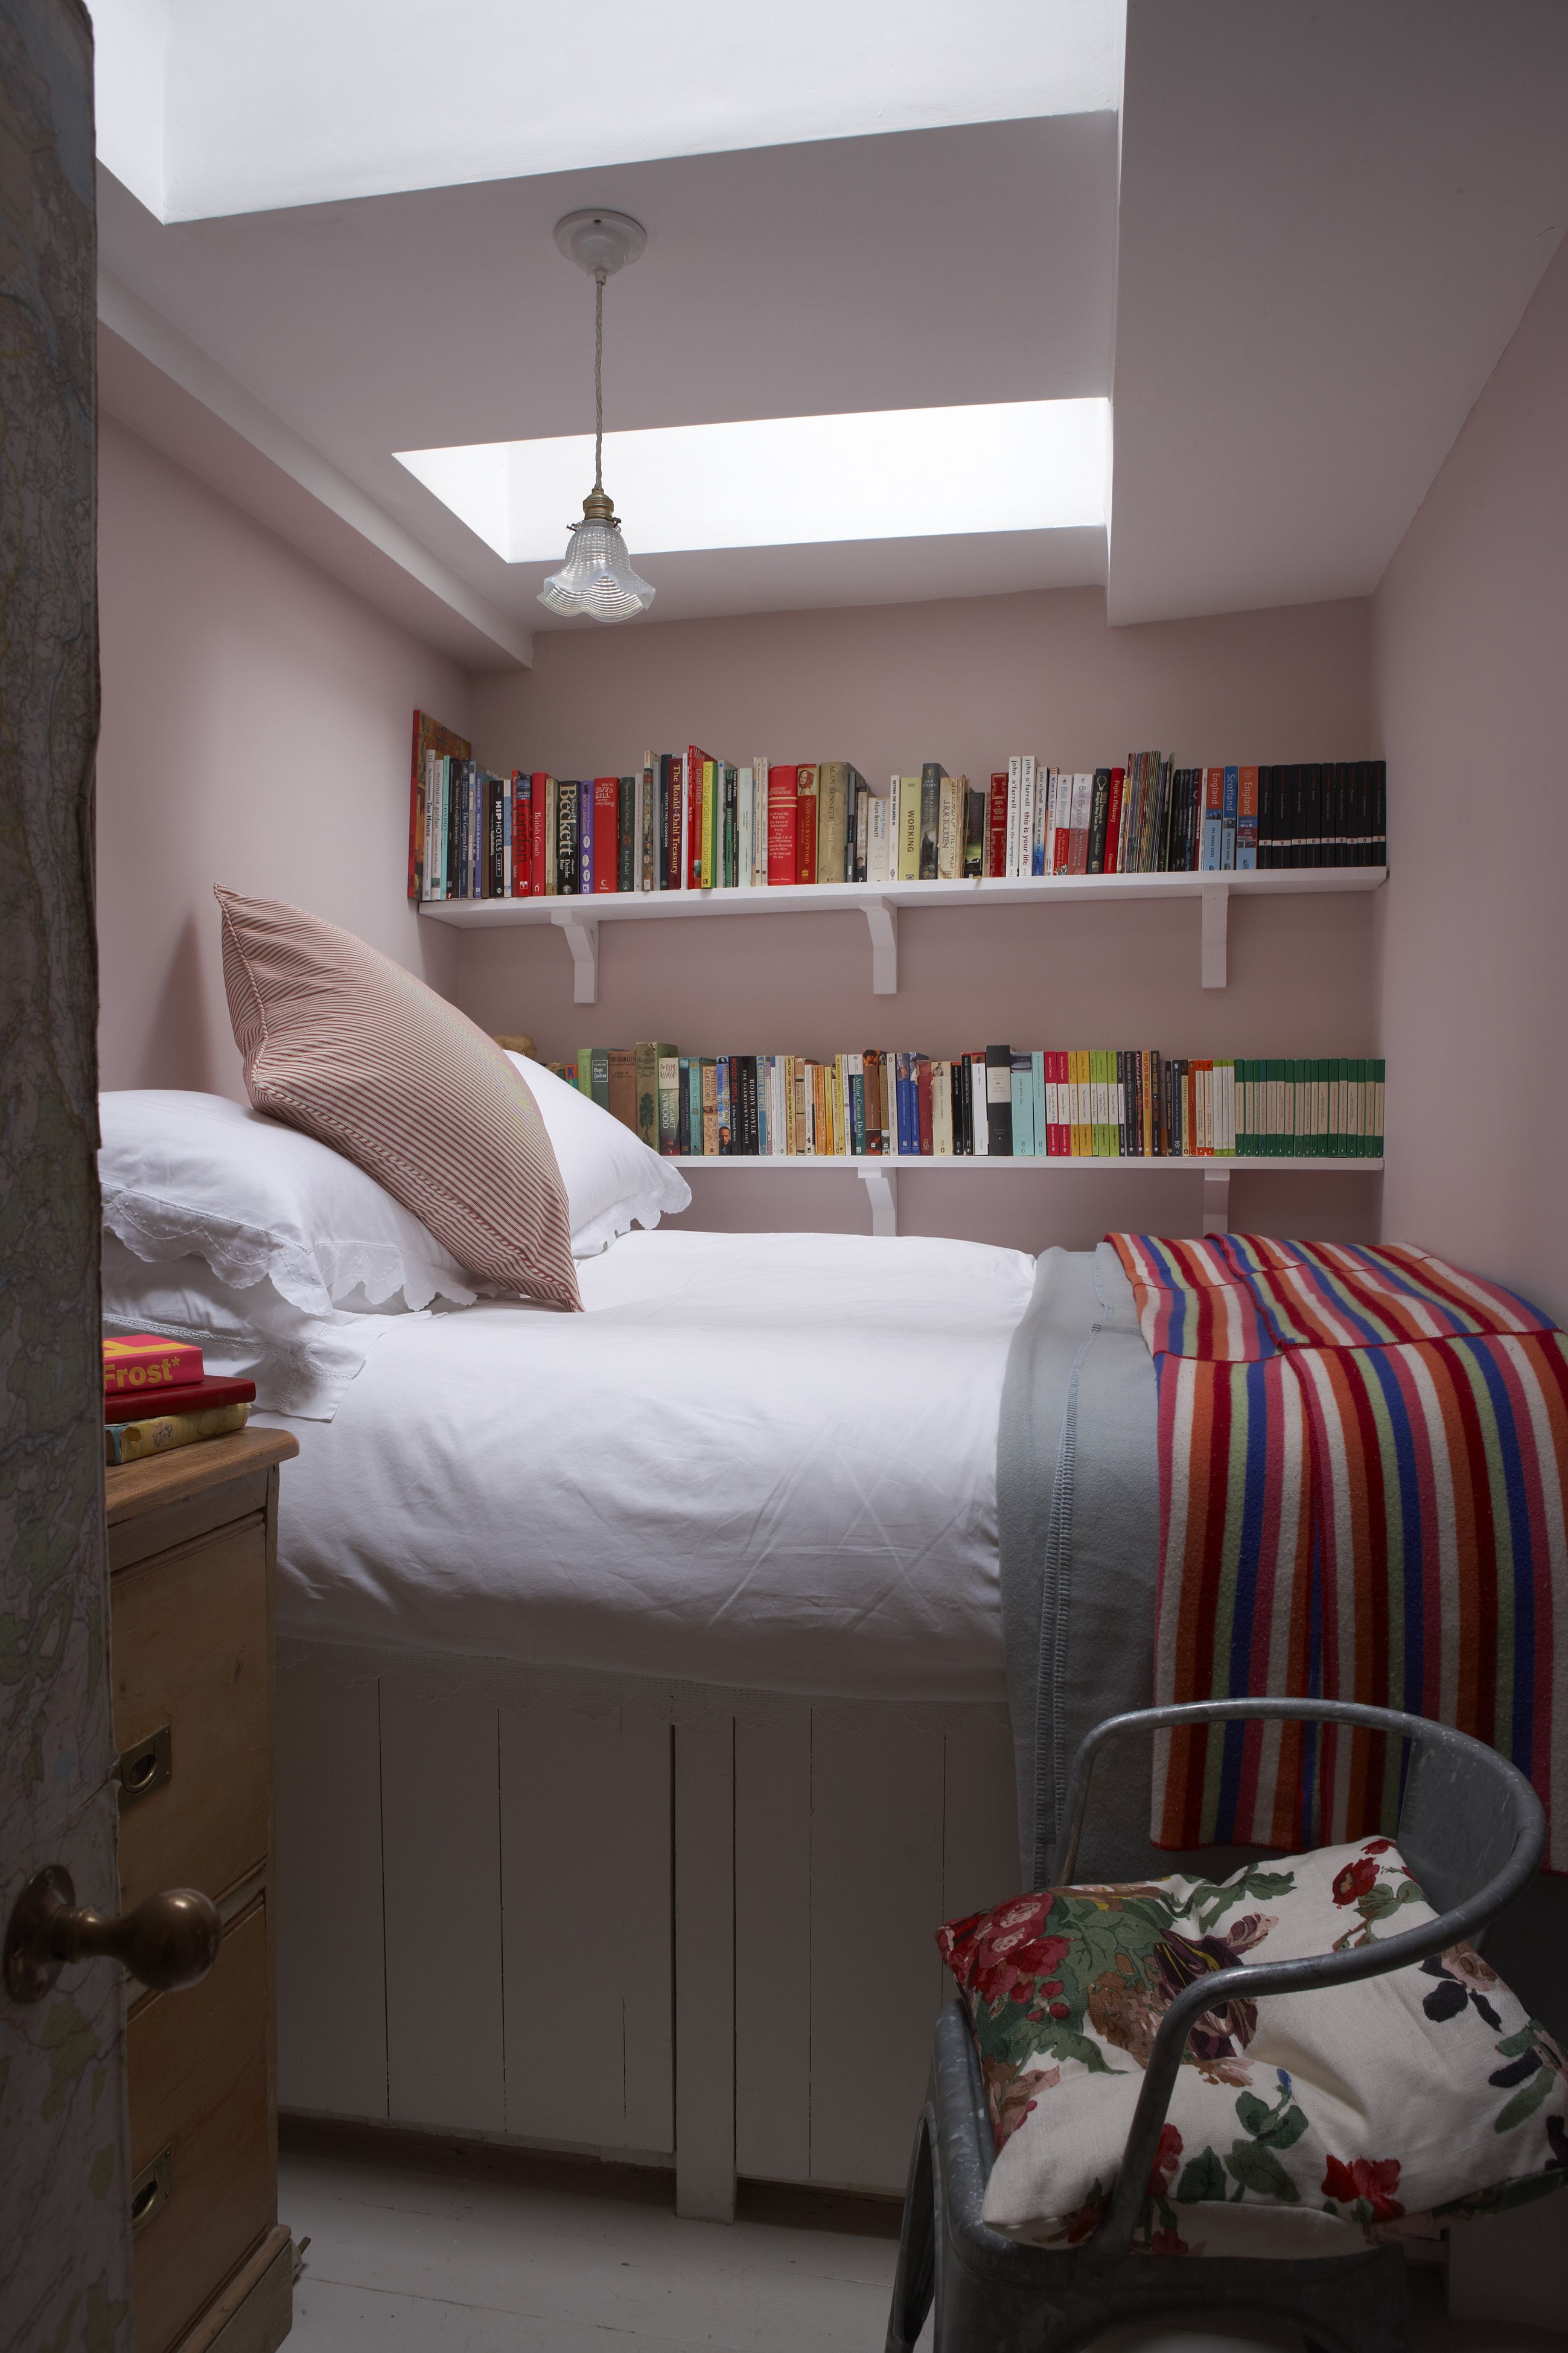 Tiny Very Small Bedroom Ideas Deals, 20 OFF   www.gruposincom.es